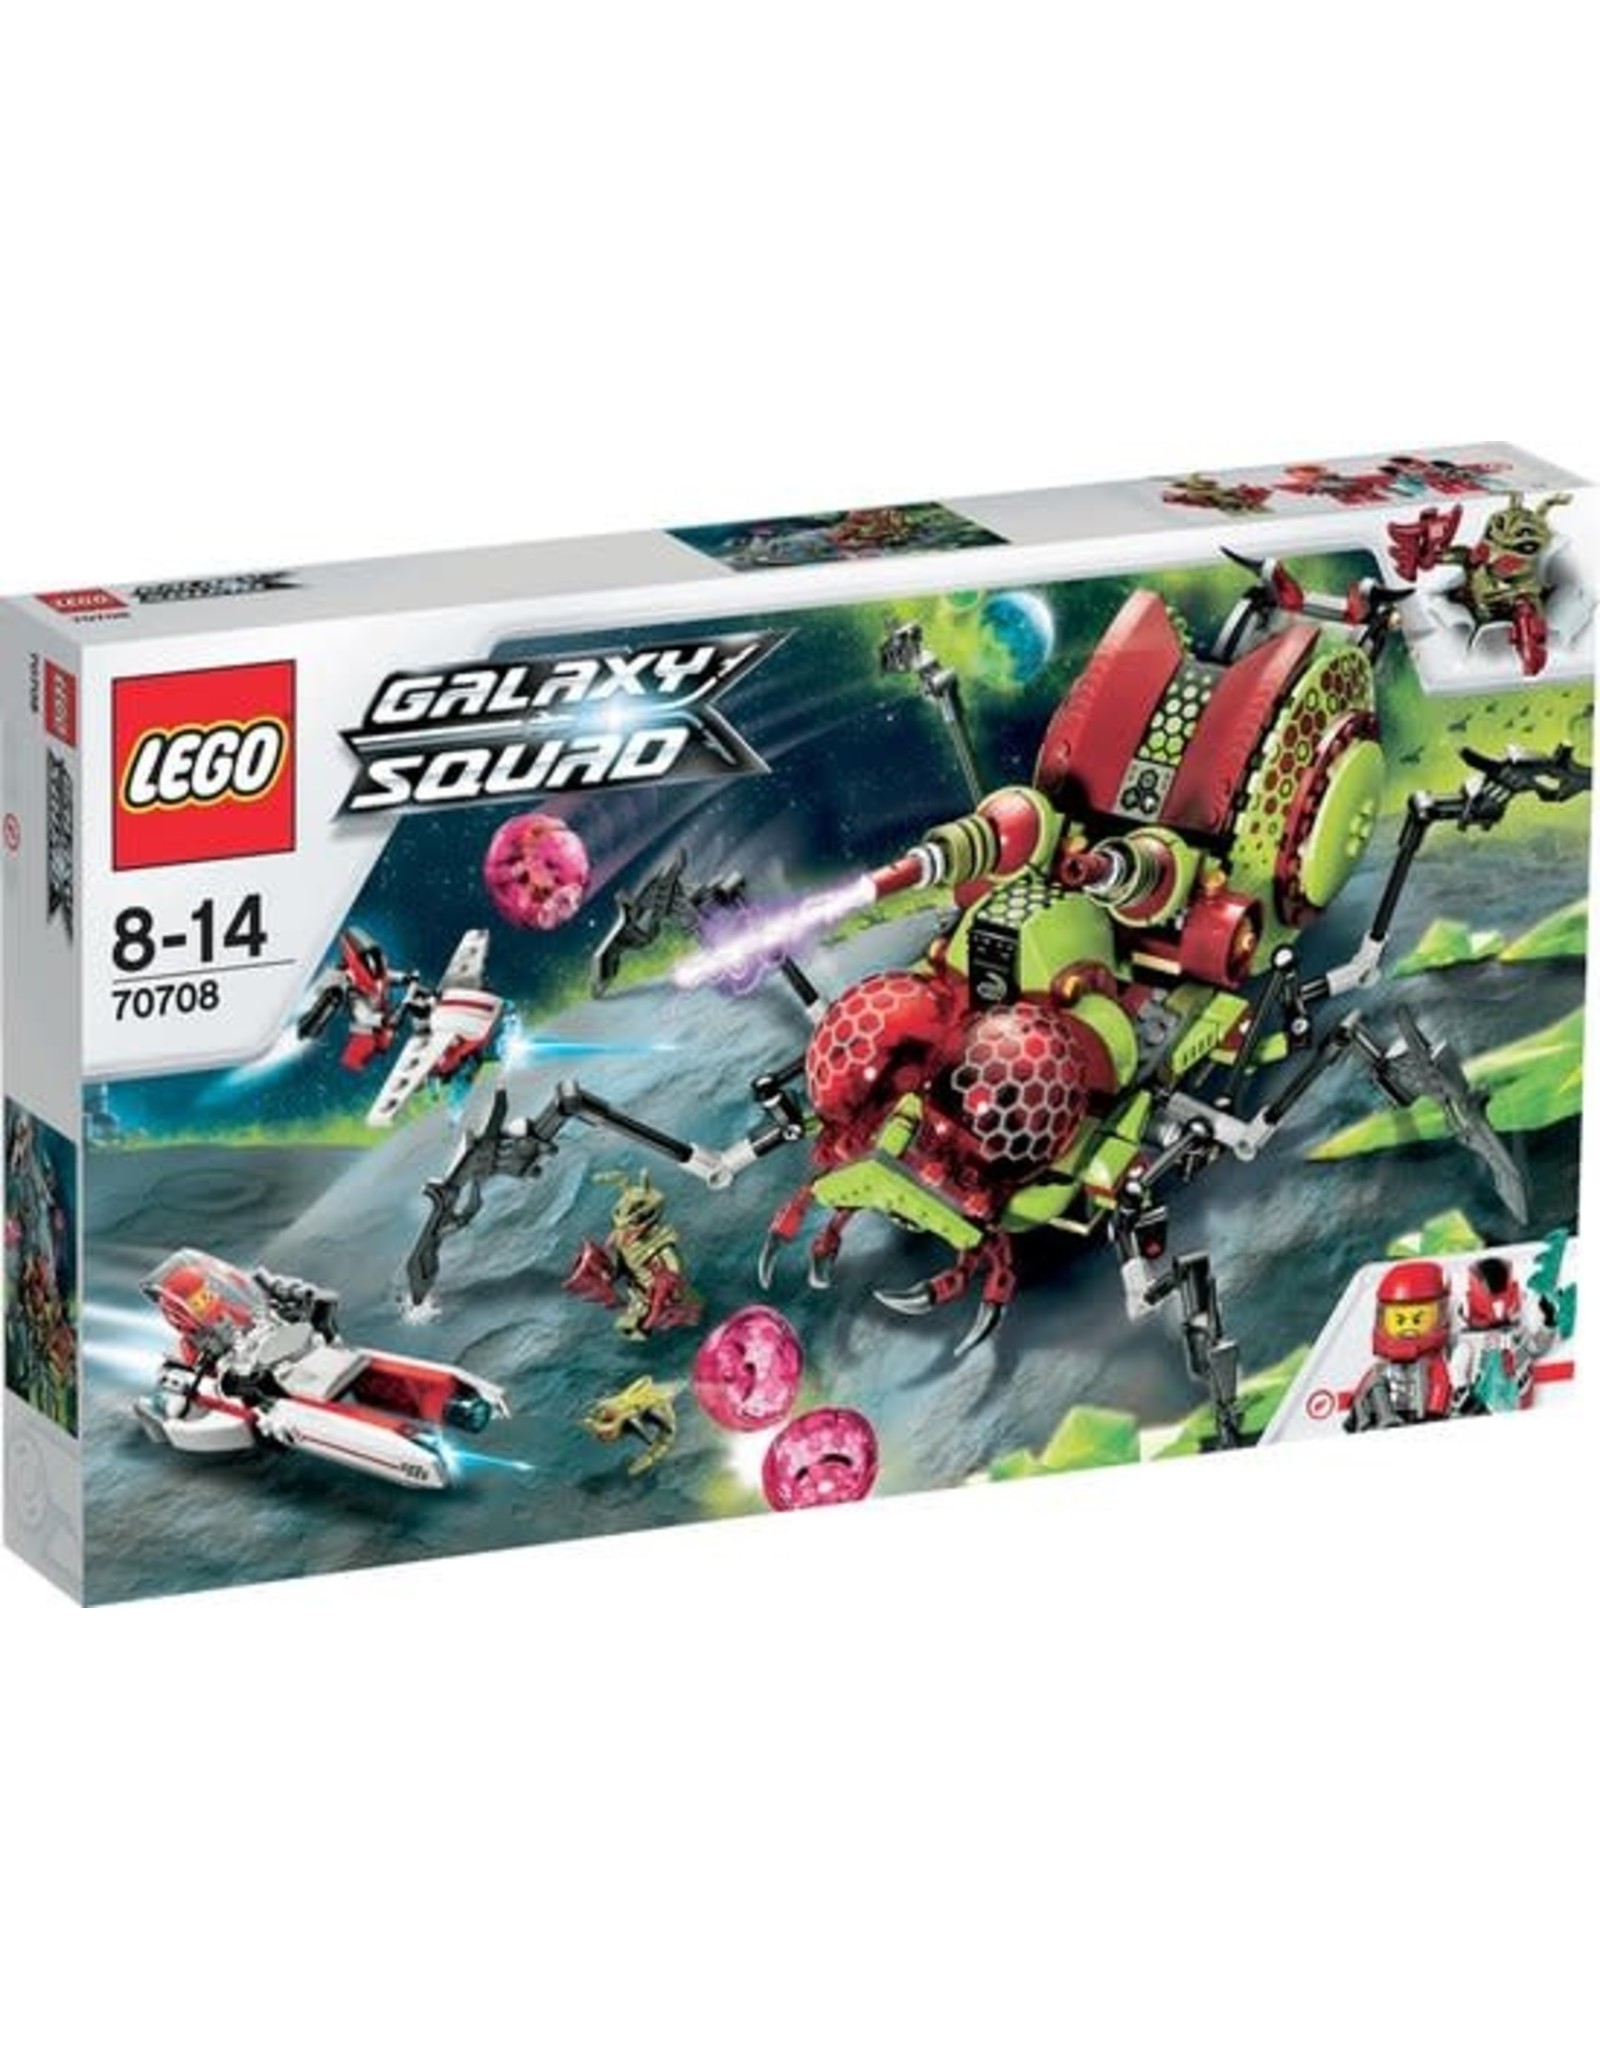 LEGO Lego Galaxy Squad 70708 Hive Crawler